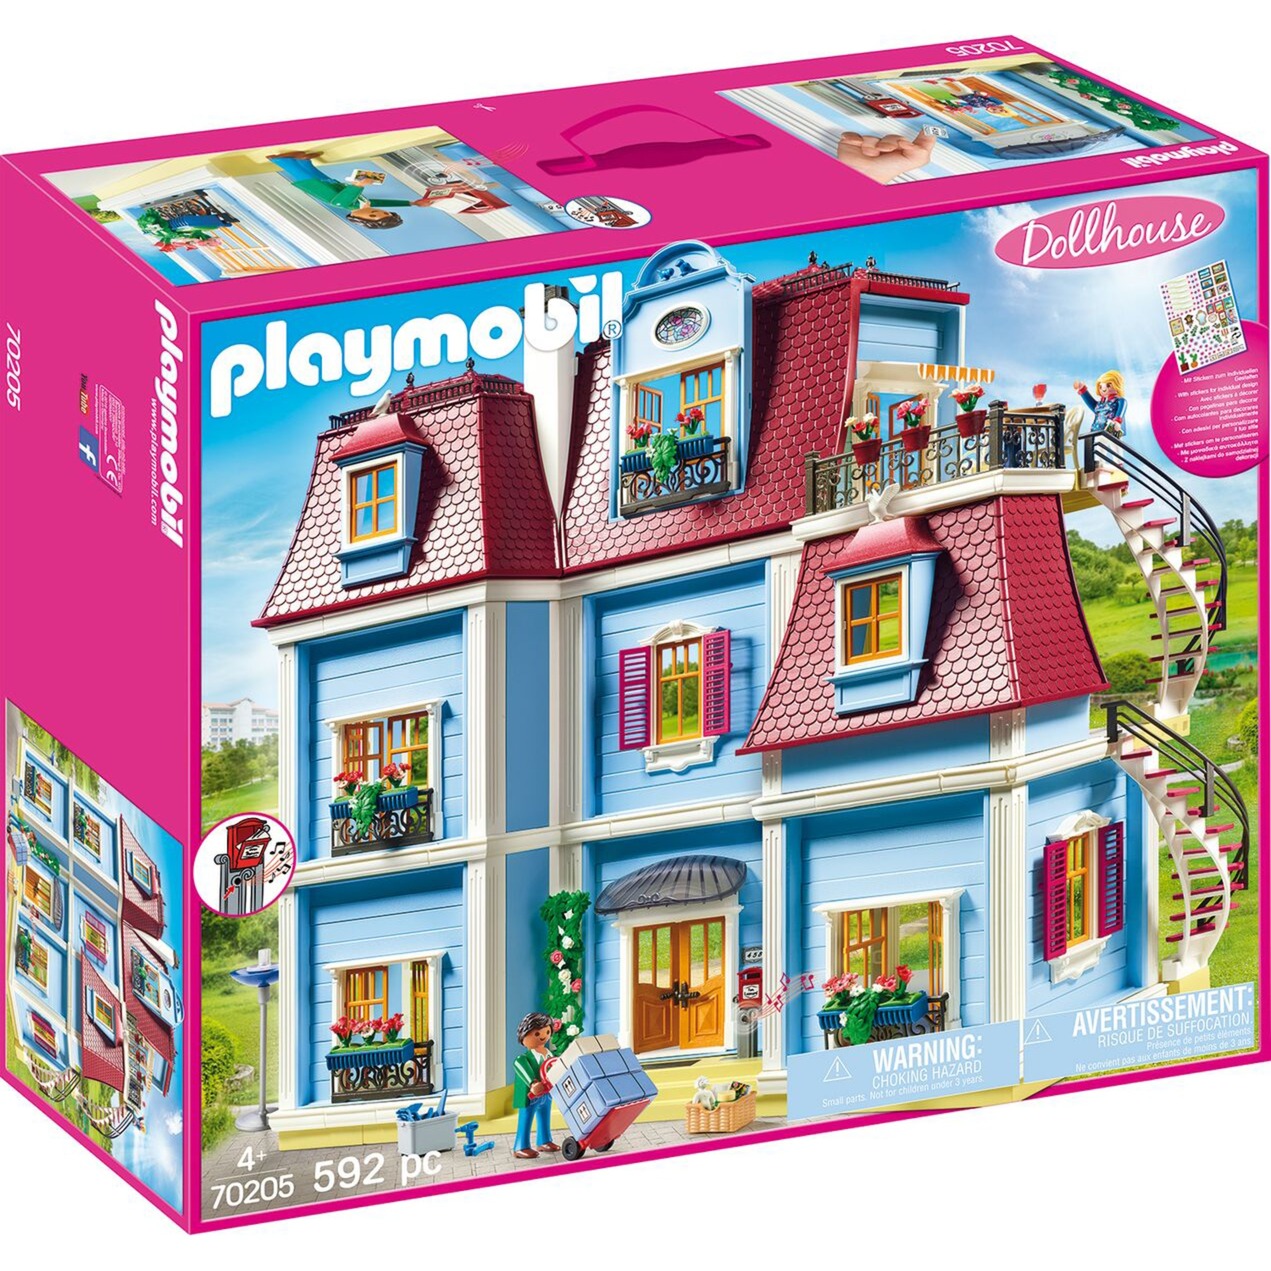 Image of Alternate - 70205 Mein Großes Puppenhaus, Konstruktionsspielzeug online einkaufen bei Alternate